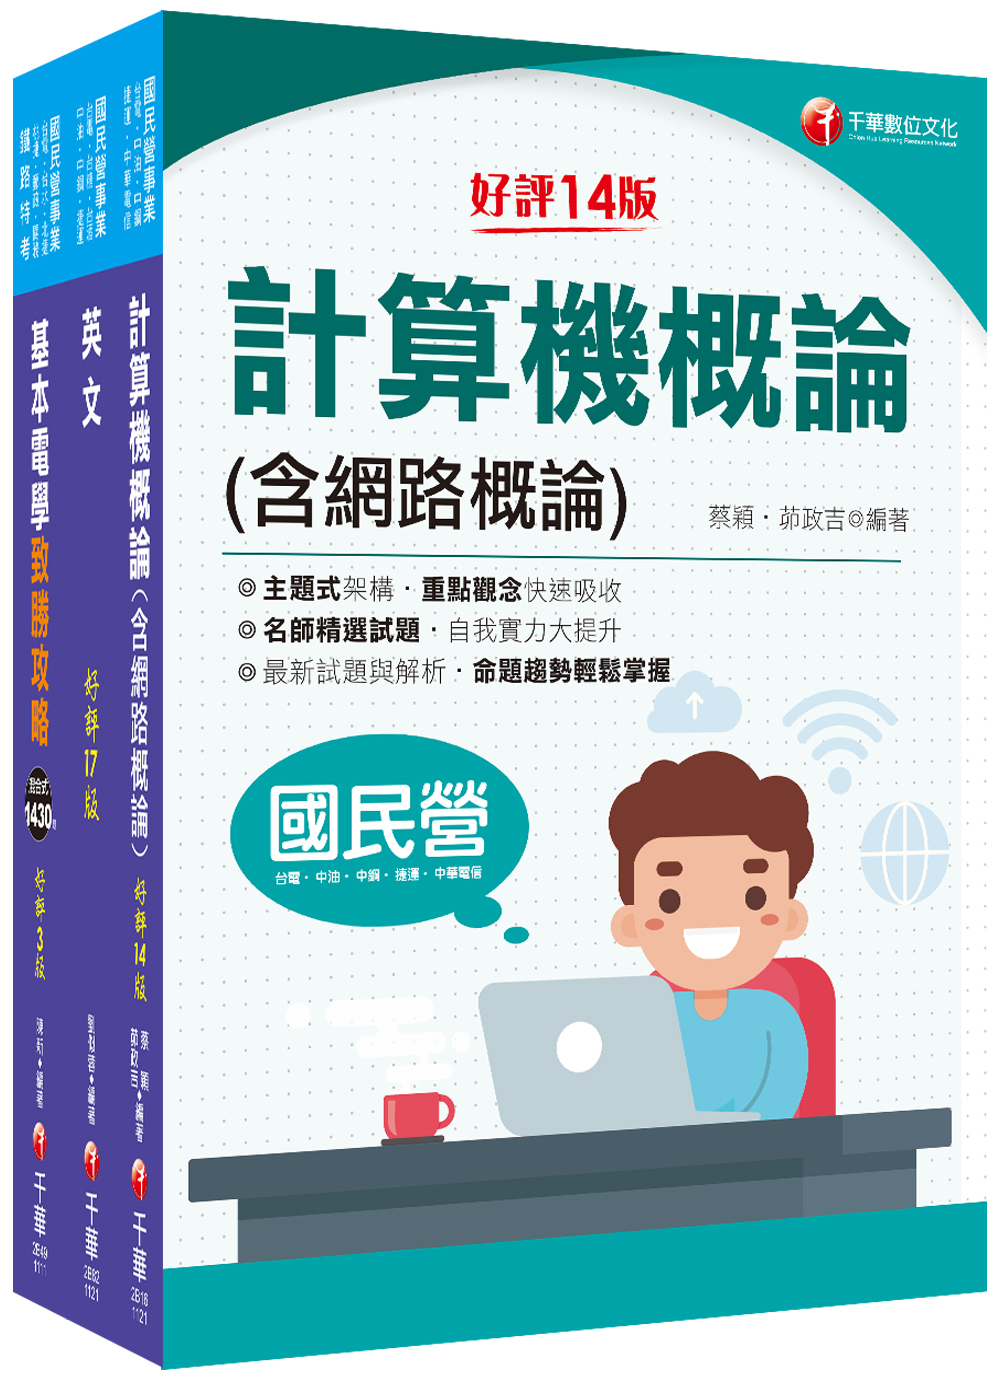 商品圖片 2022[工務類-電信線路建設與維運專業職(四)工程師]中華電信從業人員(基層專員)遴選課文版套書